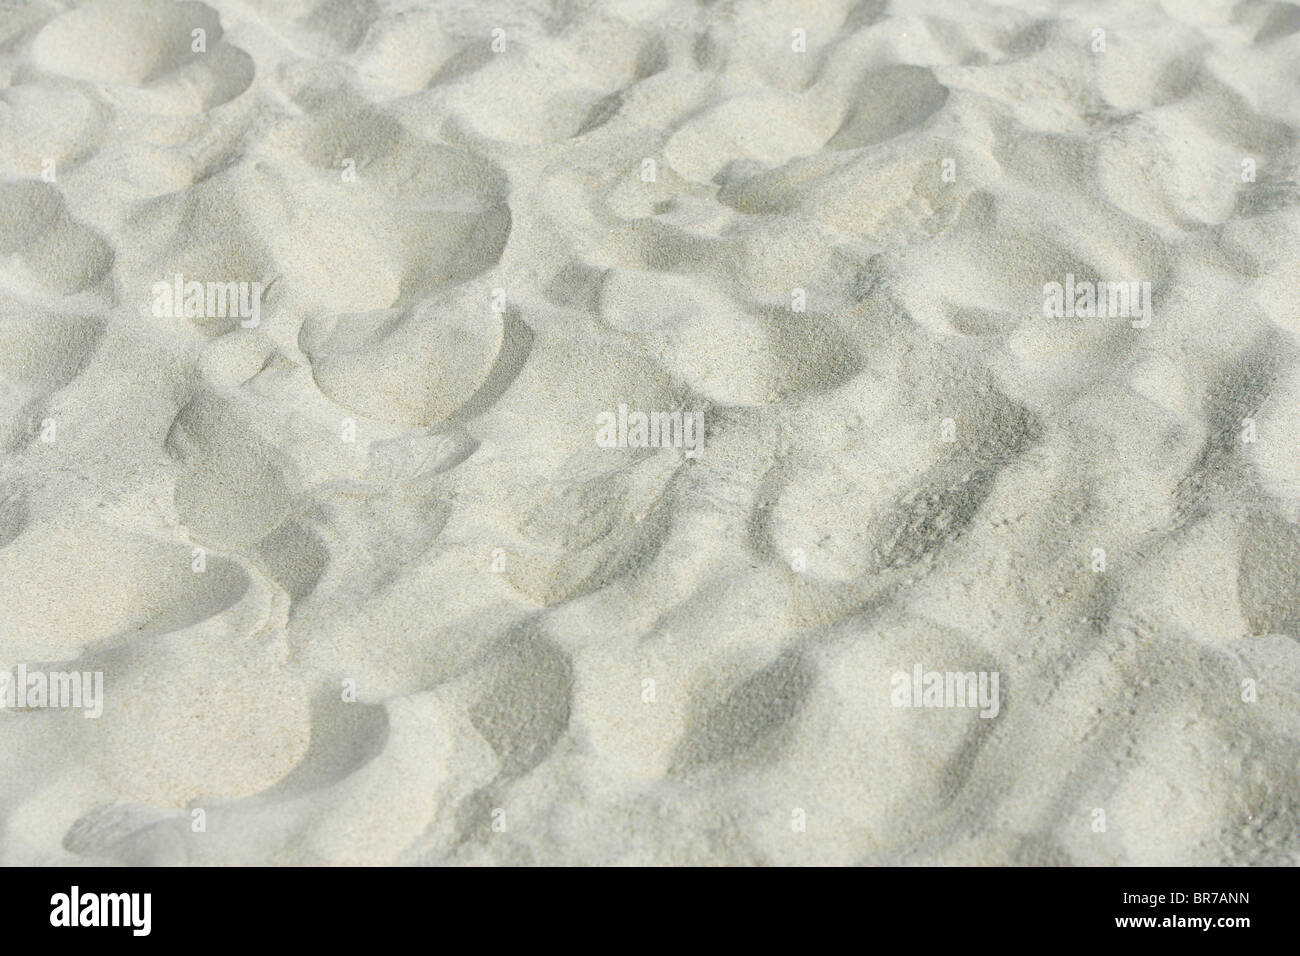 La texture de fond de couleur claire de grains de sable sur la plage Banque D'Images